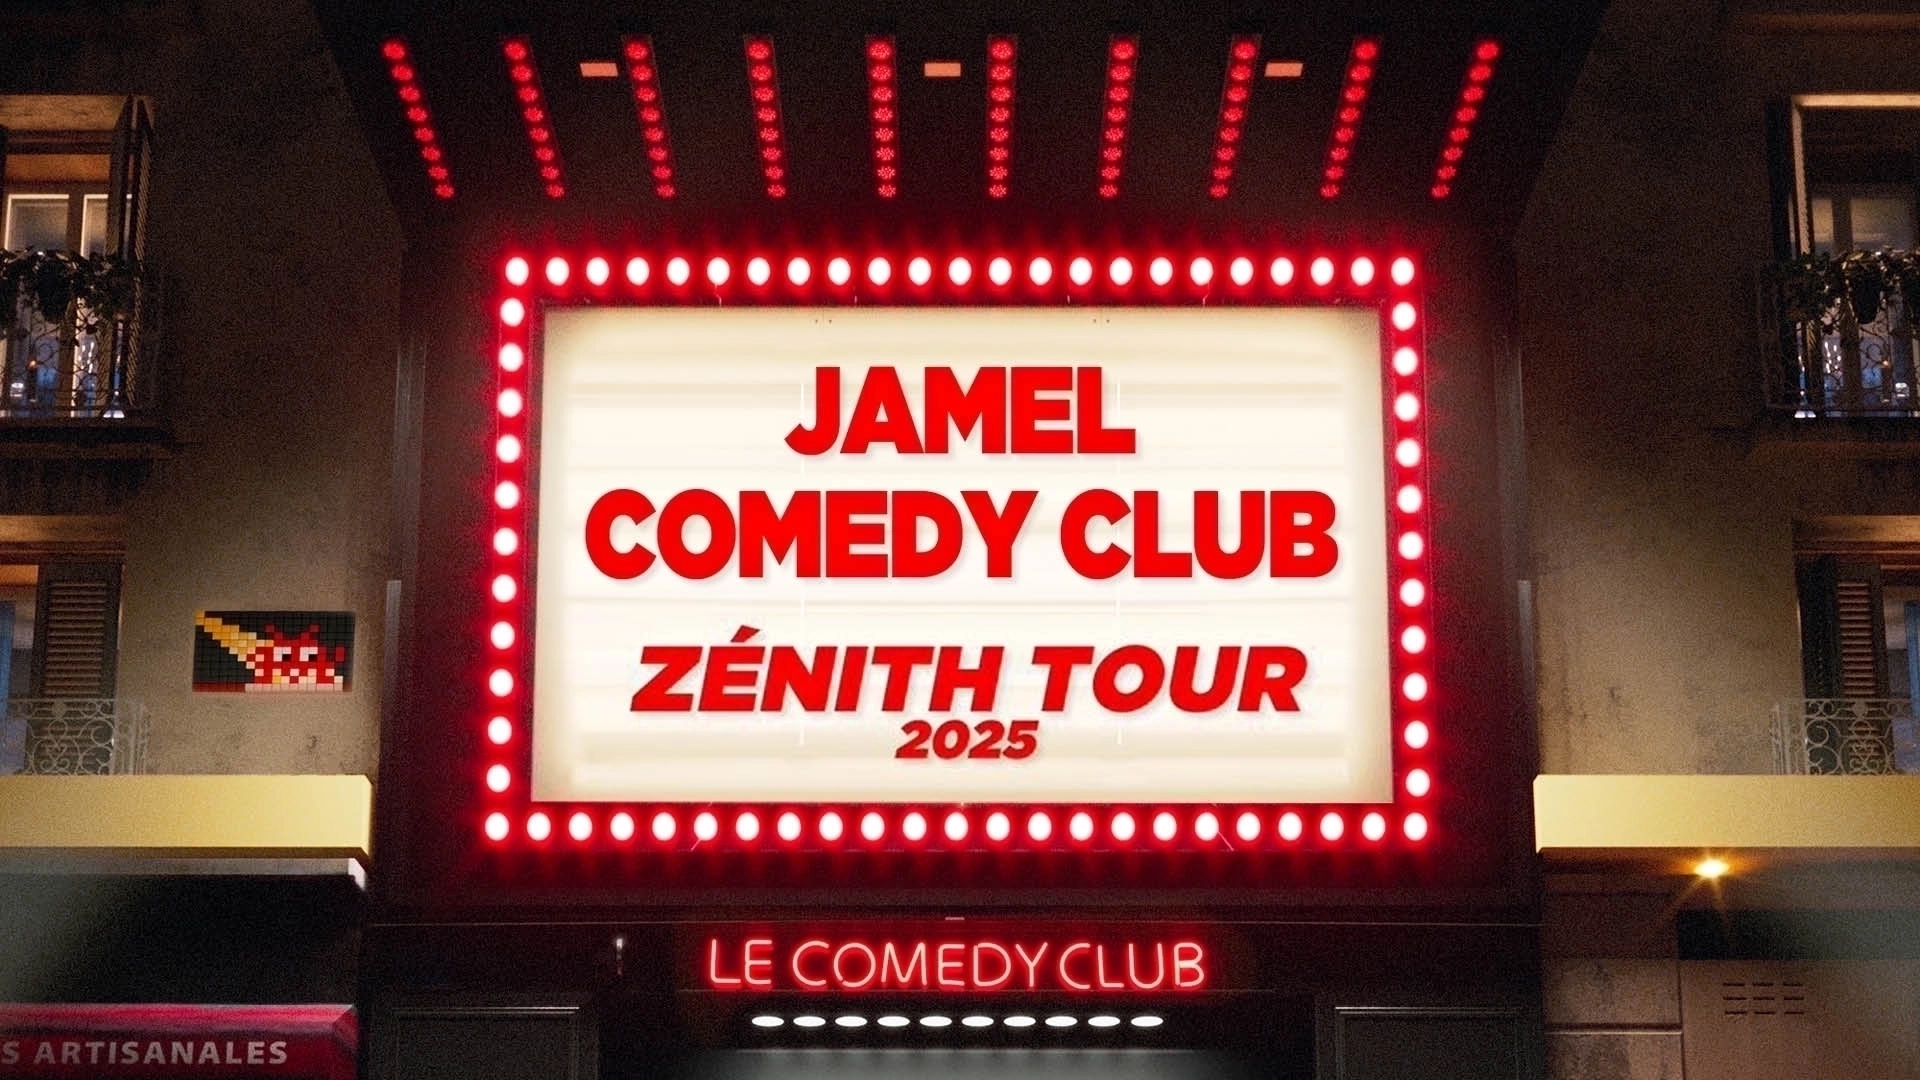 Jamel Comedy Club Zenith Tour 2025 al Palais des Sports - Dome de Paris Tickets